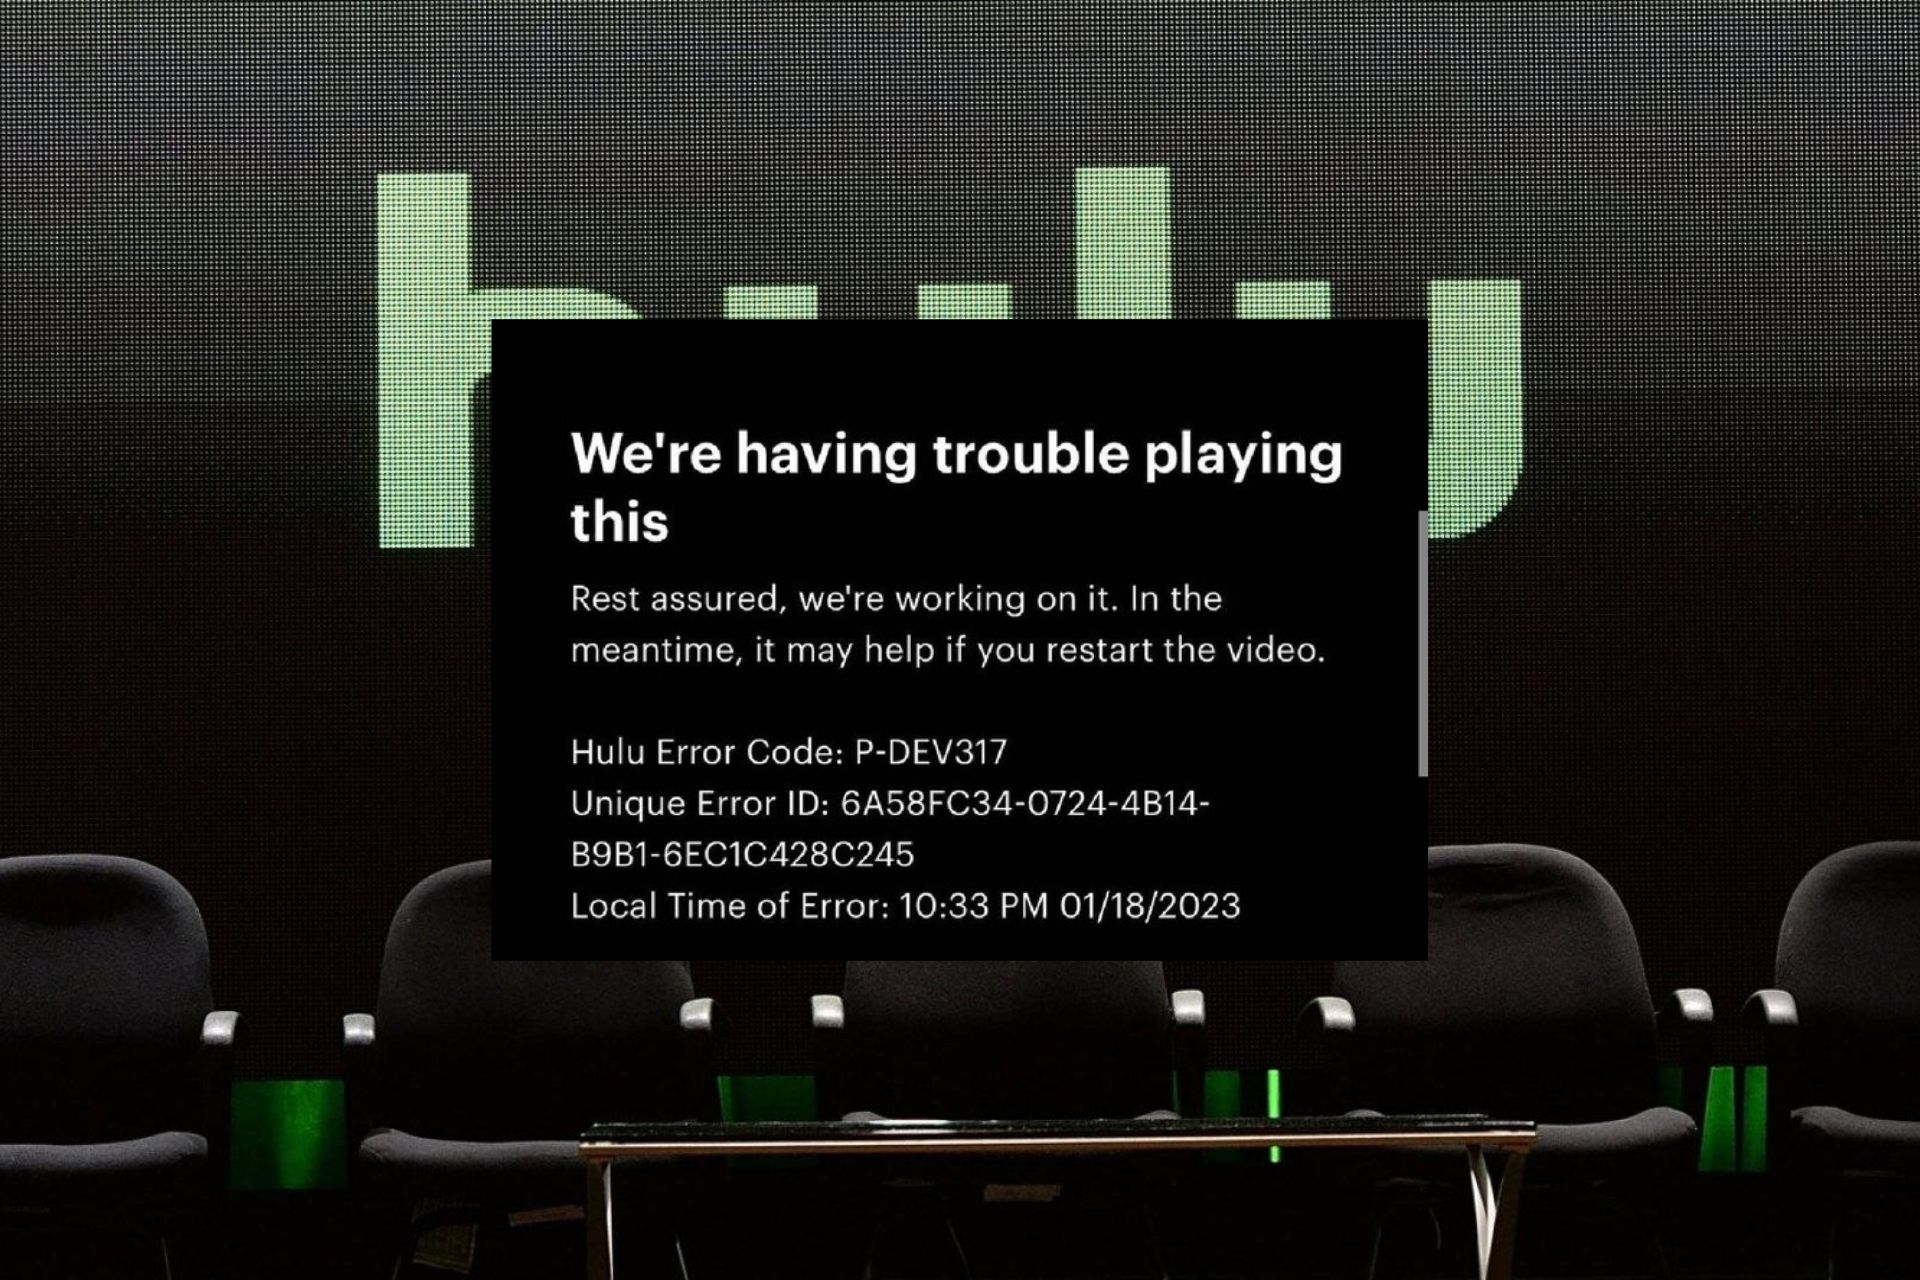 Fix: Hulu Error Code P-DEV317